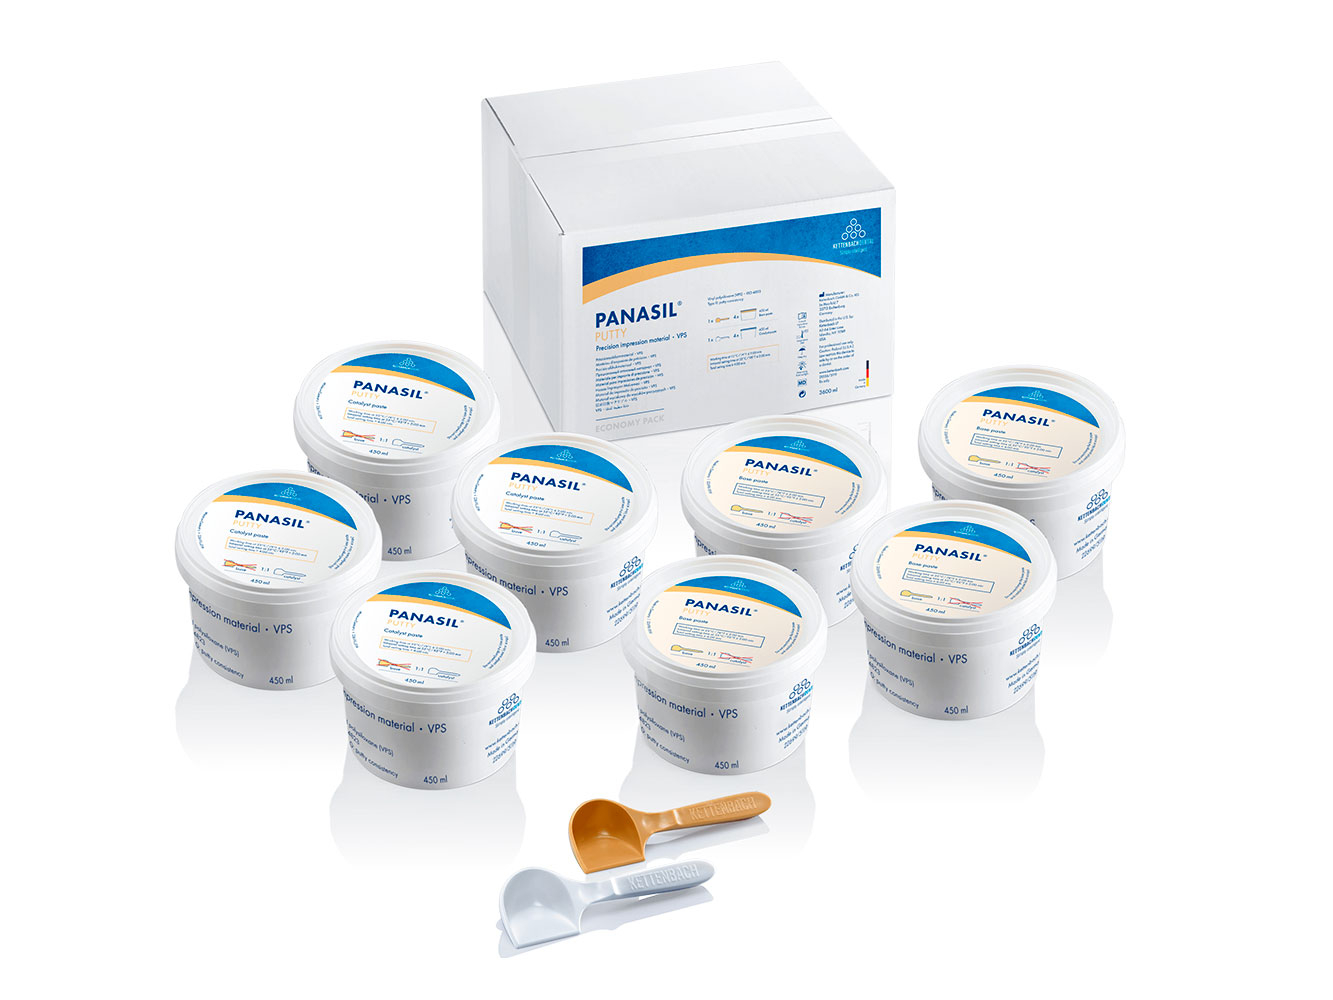 Panasil Putty Economy pack - стоматологический оттискный (слепочный) материал в экономичной упаковке 8 х 450 мл = 3600 мл